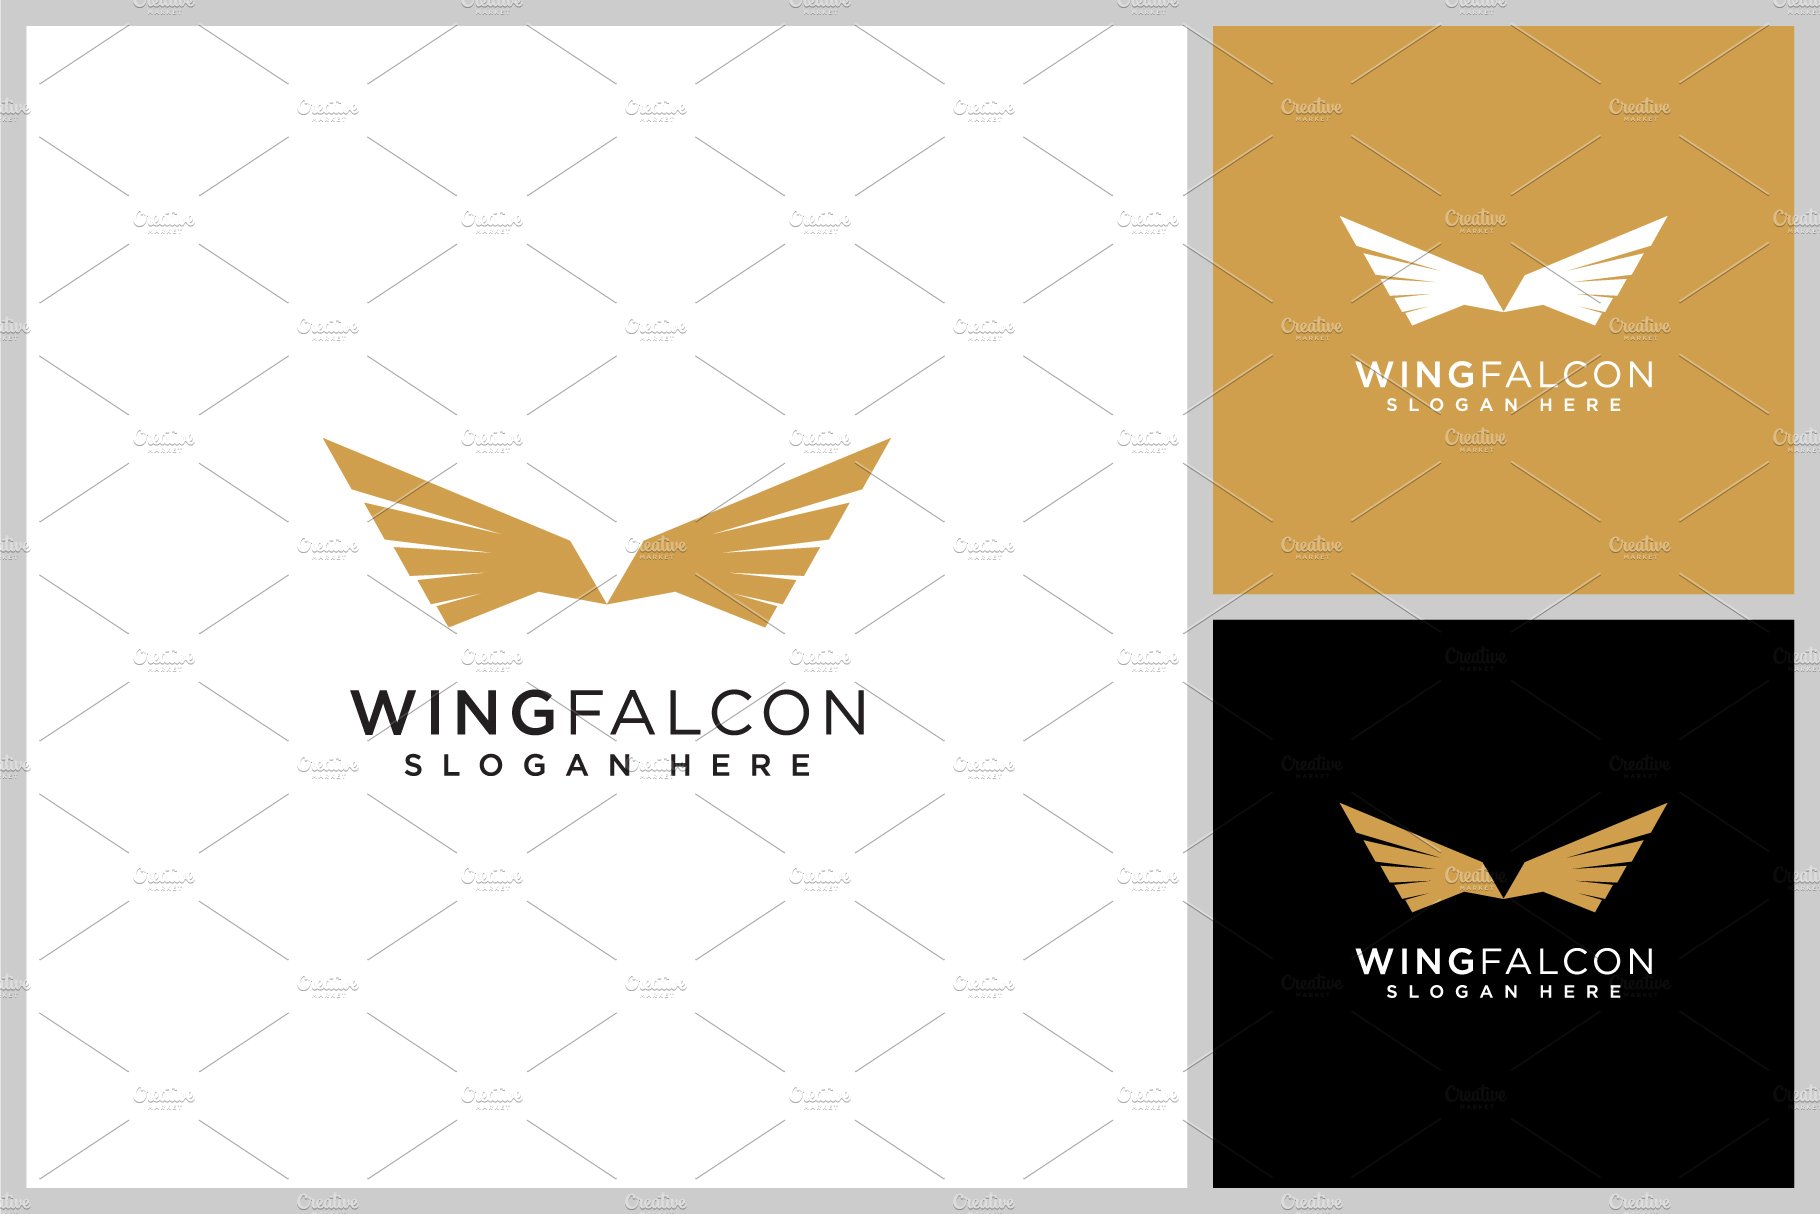 wing falcon logo vector design cover image.